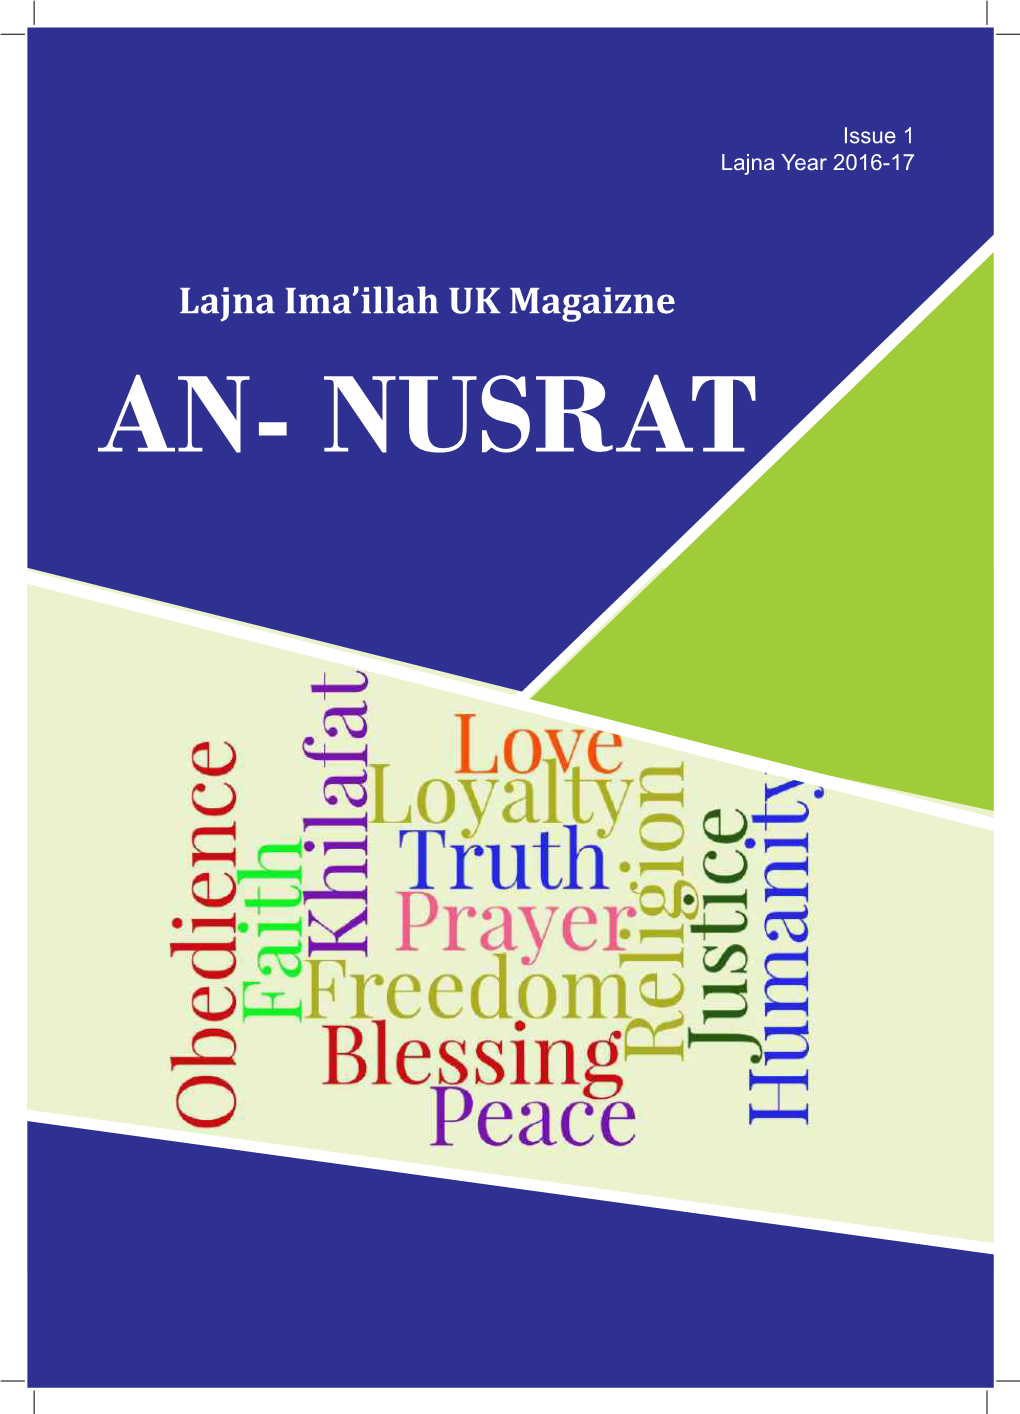 An-Nusrat 2016 – 2017 Issue 1